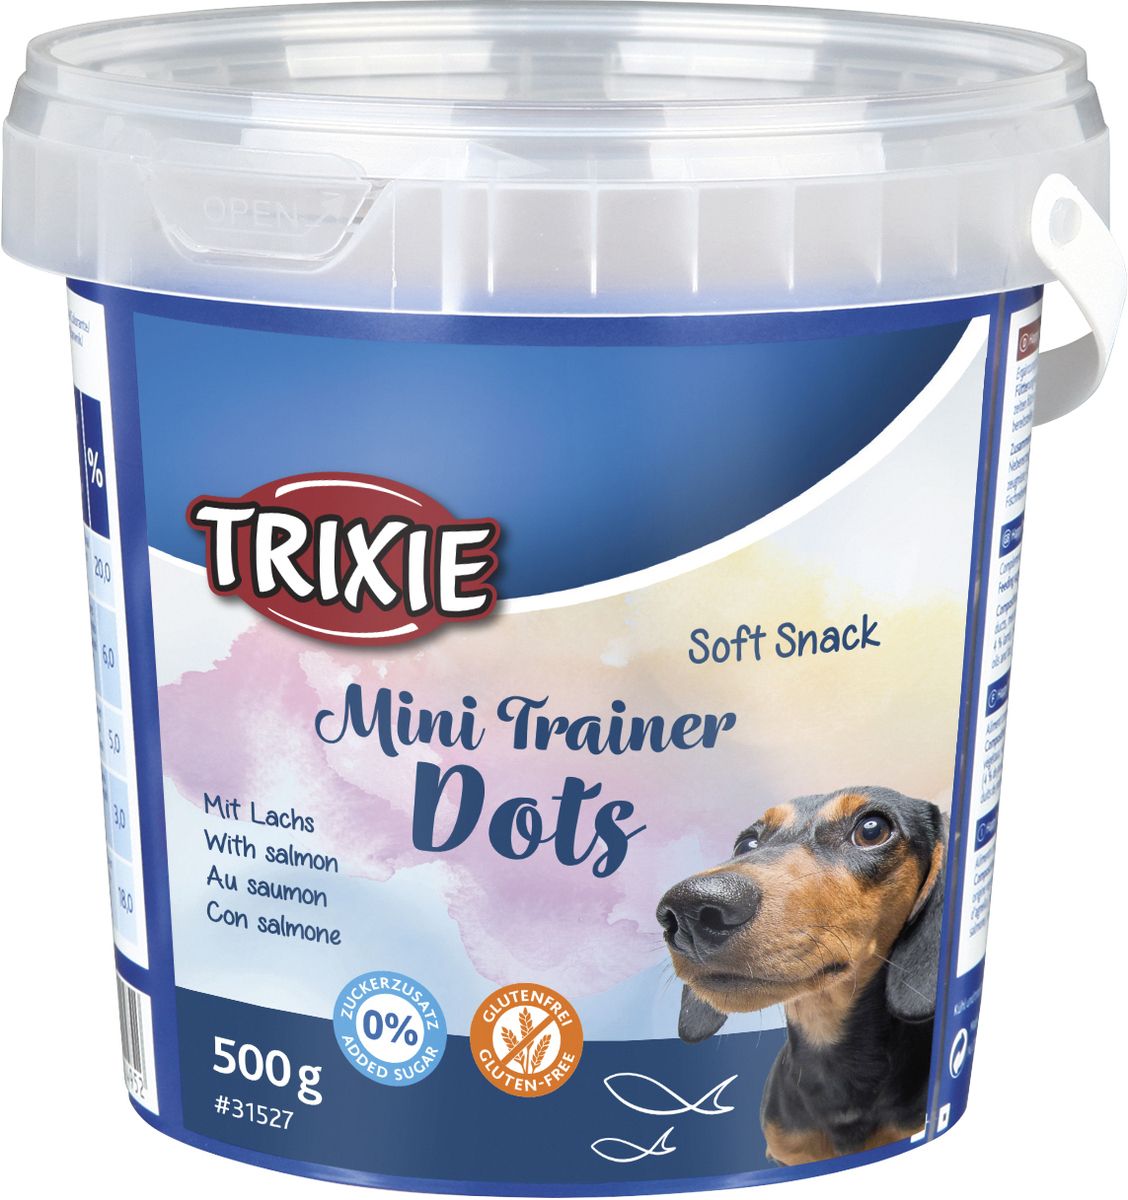 Køb Trixie Hundegodbidder i spand, Trainer Dots m. laks hos